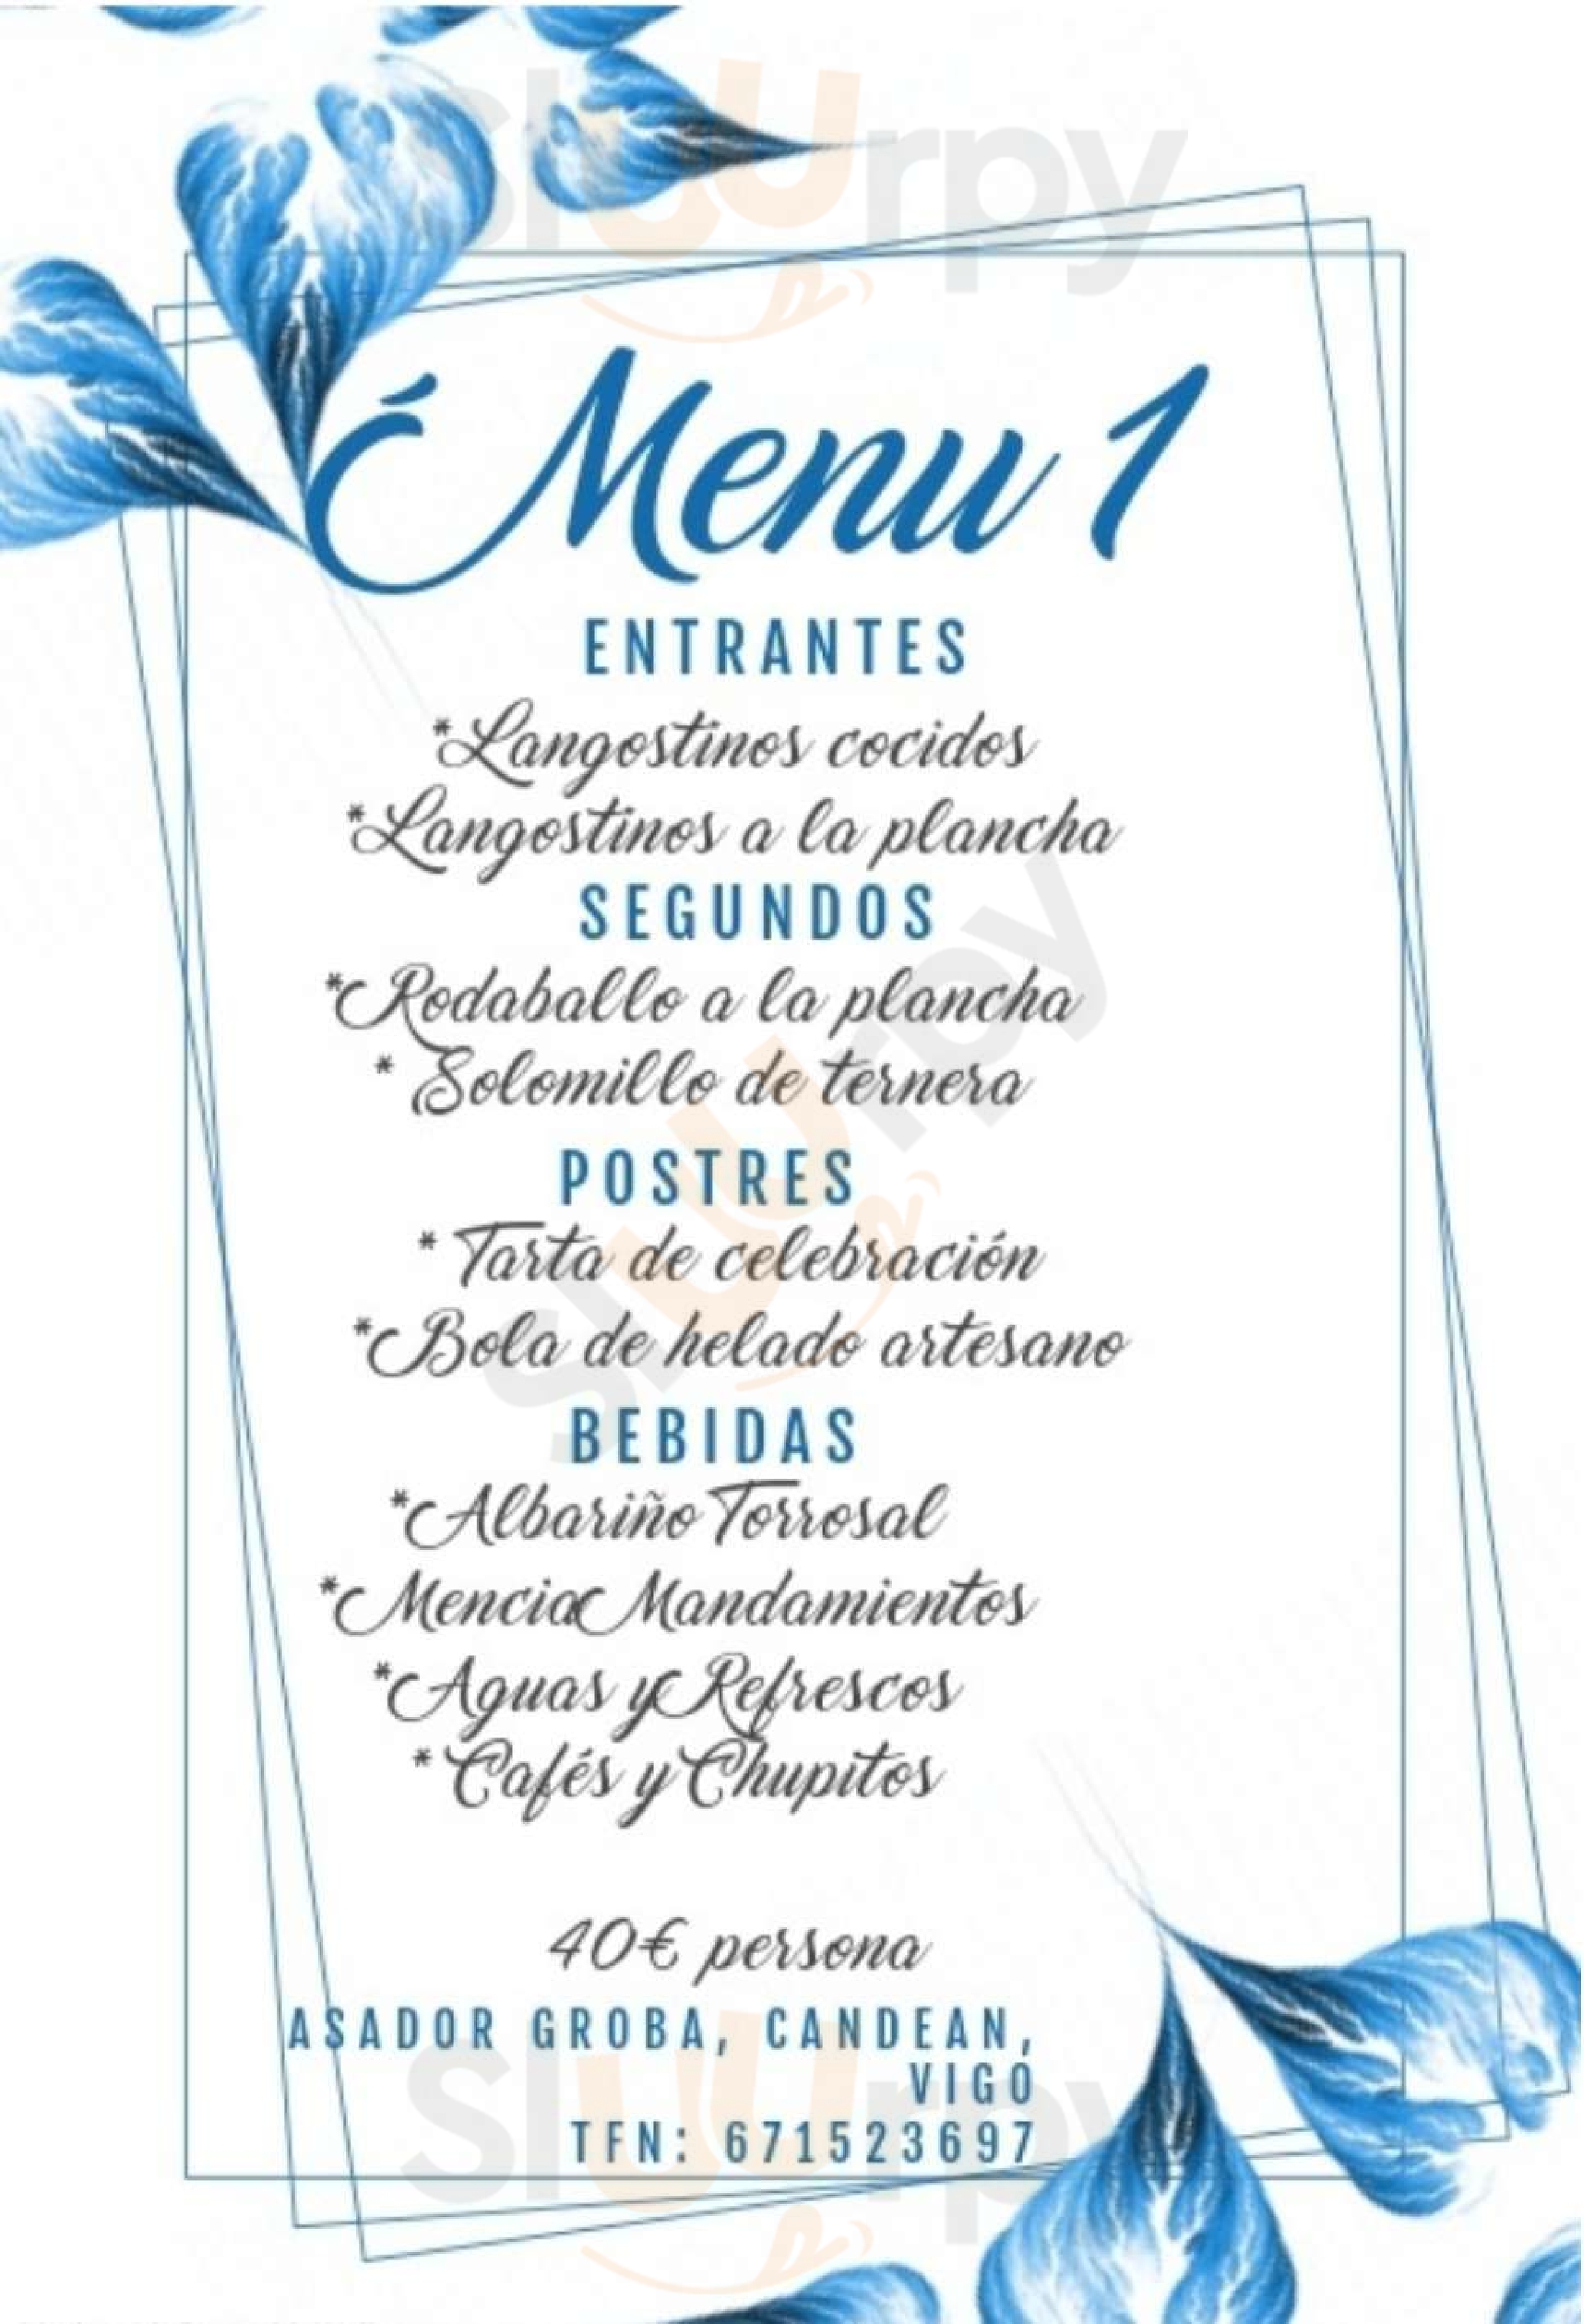 Restaurante Groba Pontevedra Menu - 1